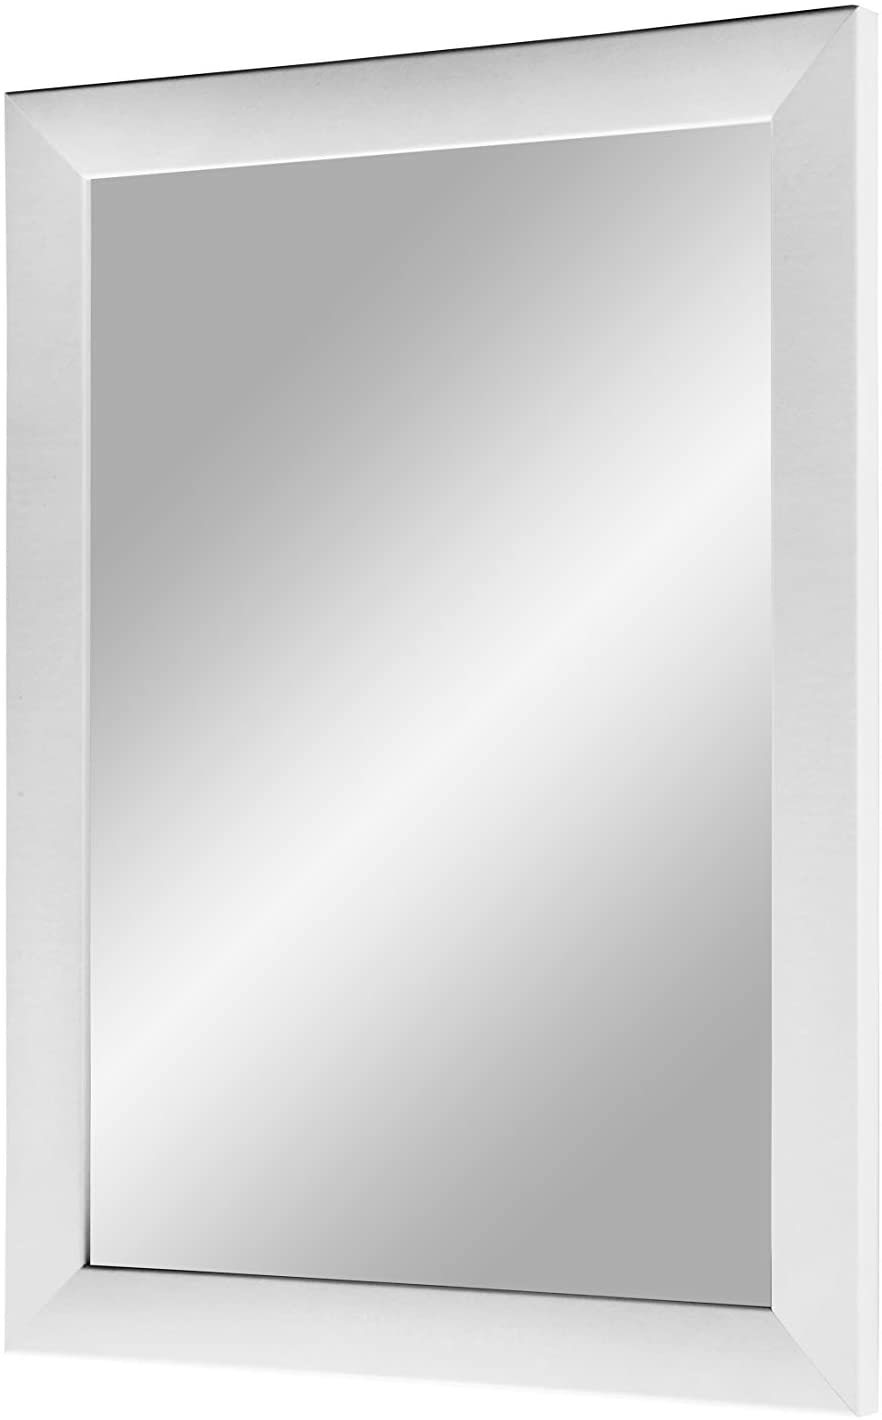 EXCLUSIV Wandspiegel nach Maß (Weiß-matt), Maßgefertigter Spiegelrahmen inkl. Spiegel und stabiler Rückwand mit Aufhängern